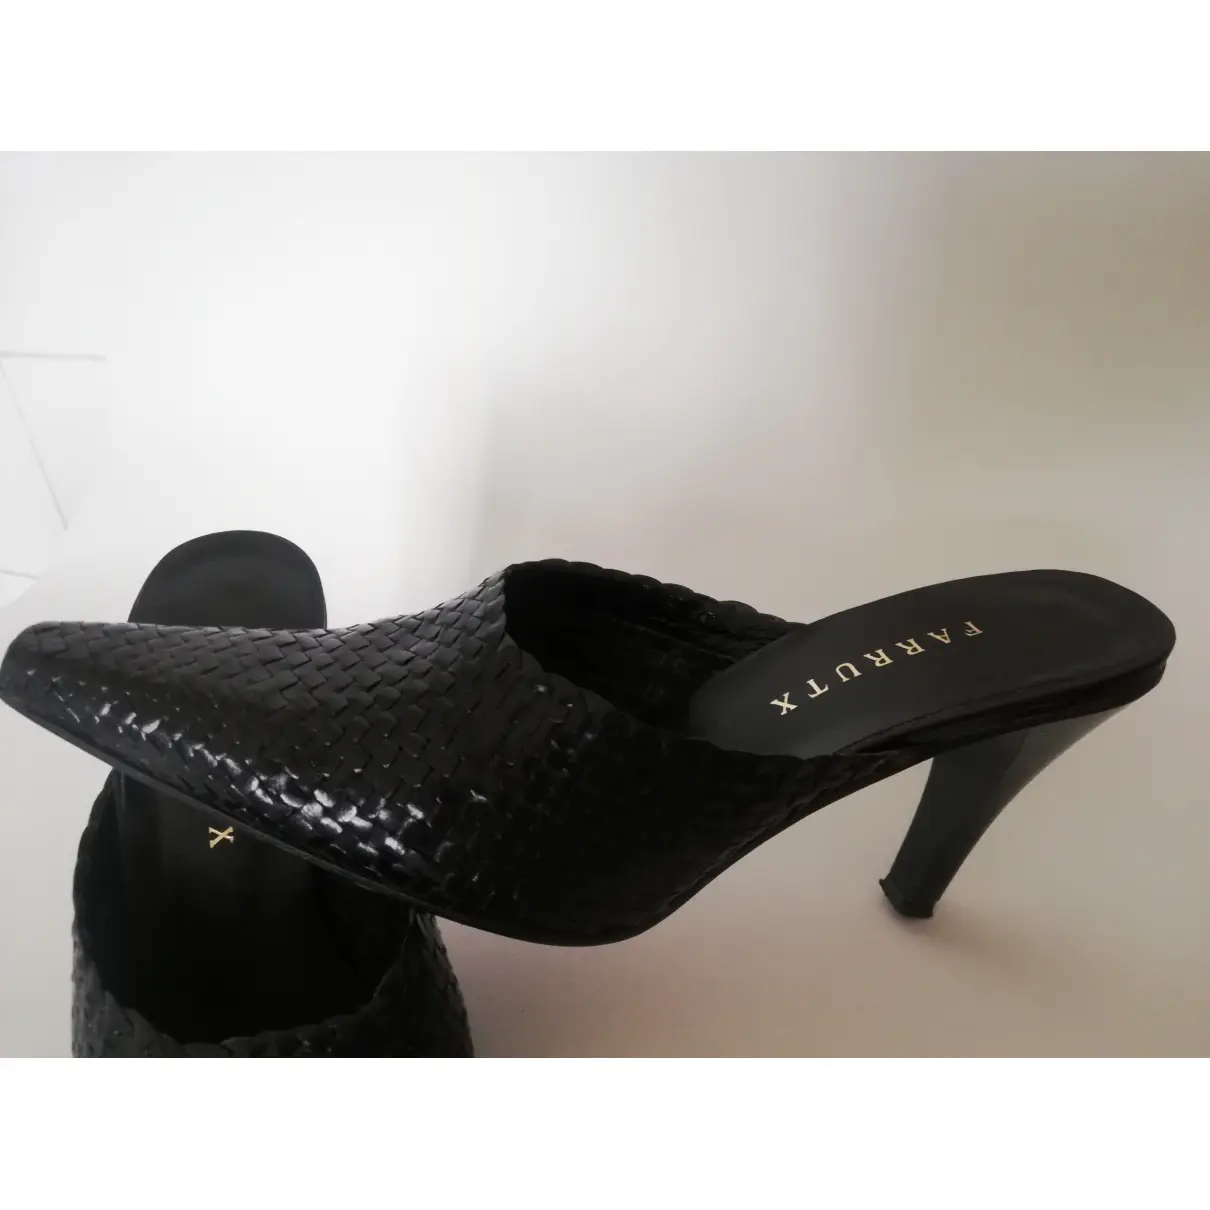 Leather heels FARRUTX